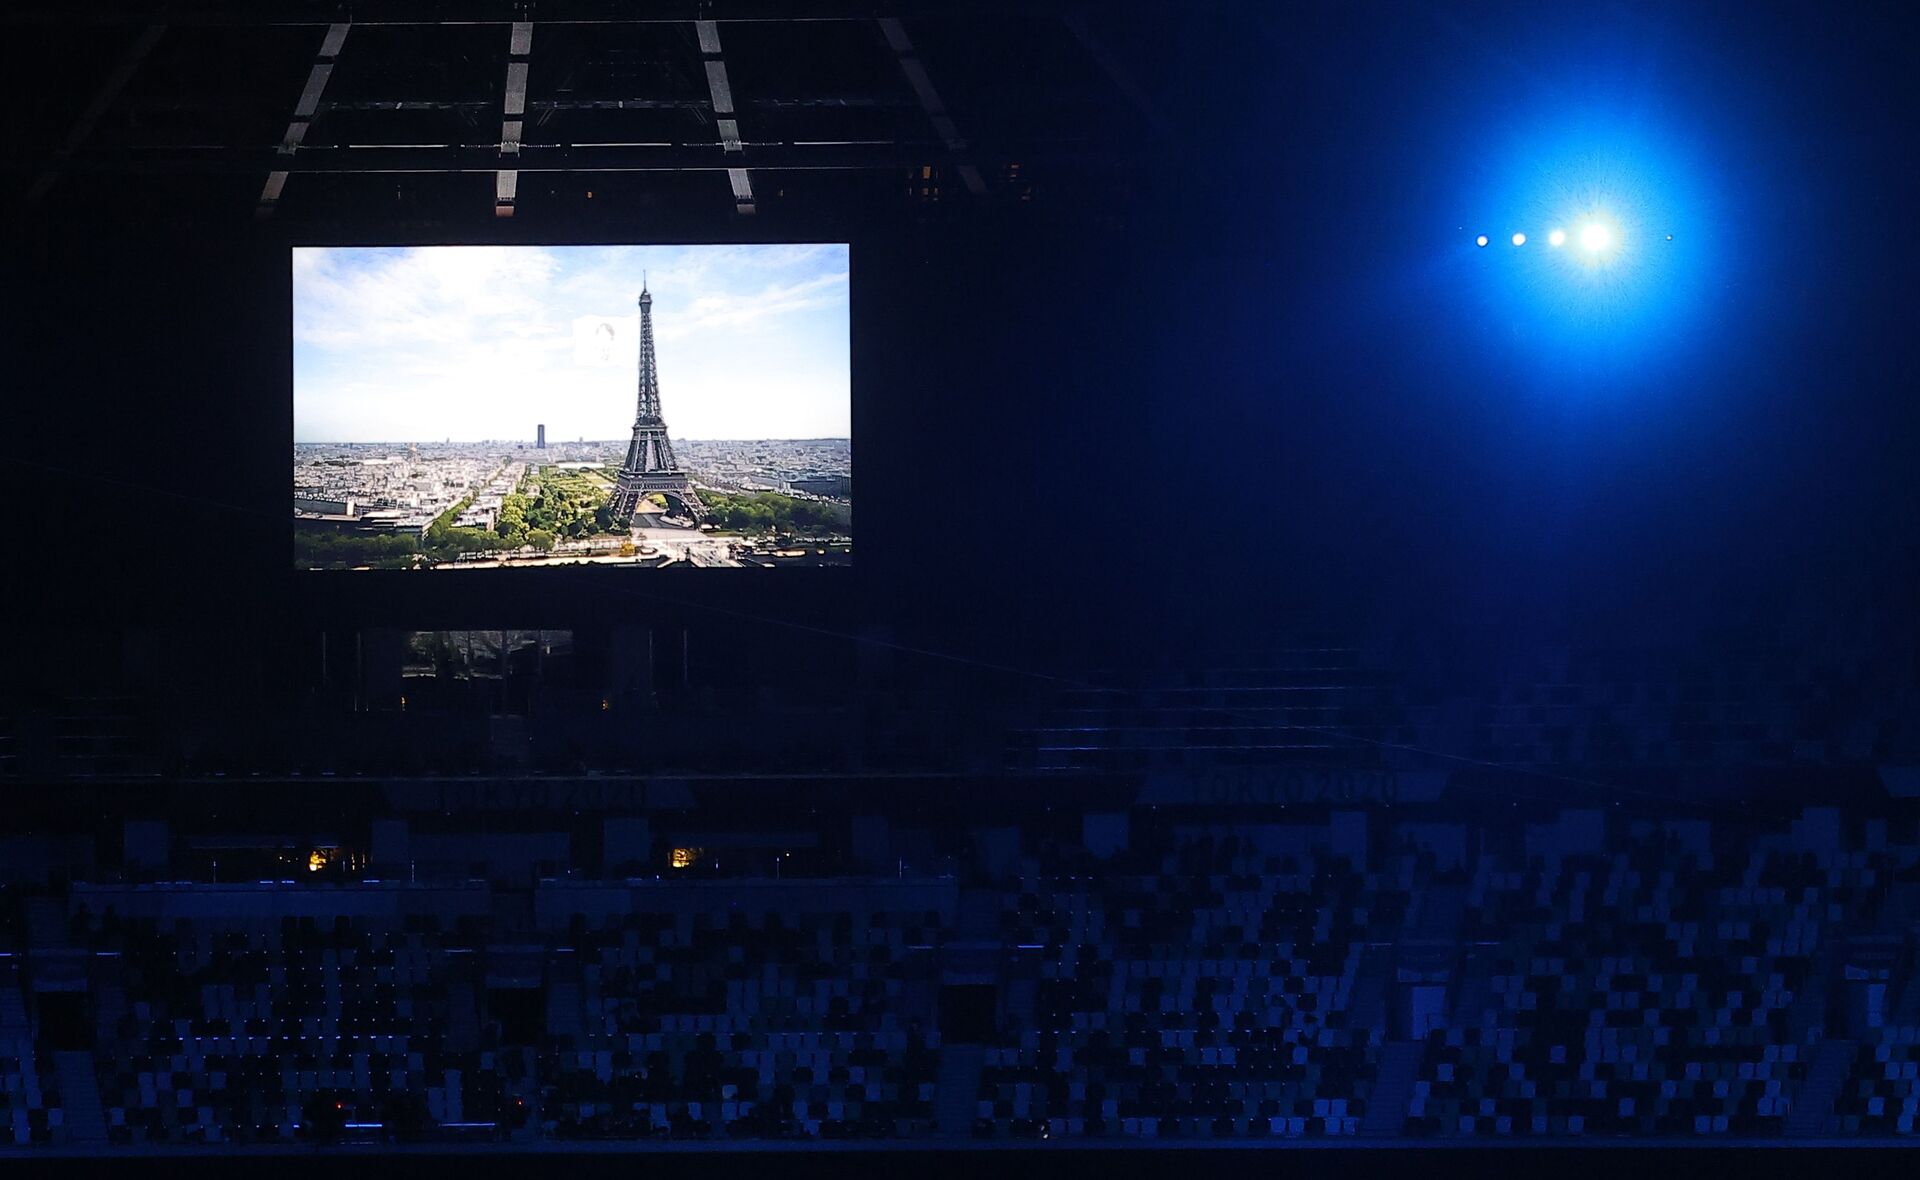 Kapanış töreninde konuşan Uluslararası Olimpiyat Komitesi Başkanı (IOC) Thomas Bach, olimpiyatların koronavirüse rağmen başarılı geçtiğini söyledi. Tokyo Valisi Yuriko Koike olimpiyat bayrağını Bach'e verdi. Bach ise bayrağı 2024 Olimpiyat Oyunları'na ev sahipliği yapacak Fransa'nın başkenti Paris'in belediye başkanı Anne Hidalgo'ya devretti. Devir töreninden sonra Fransa'nın milli marşı çalındı ve Paris'in tanıtımı stadın ekranlarına yansıtıldı. - Sputnik Türkiye, 1920, 10.08.2021